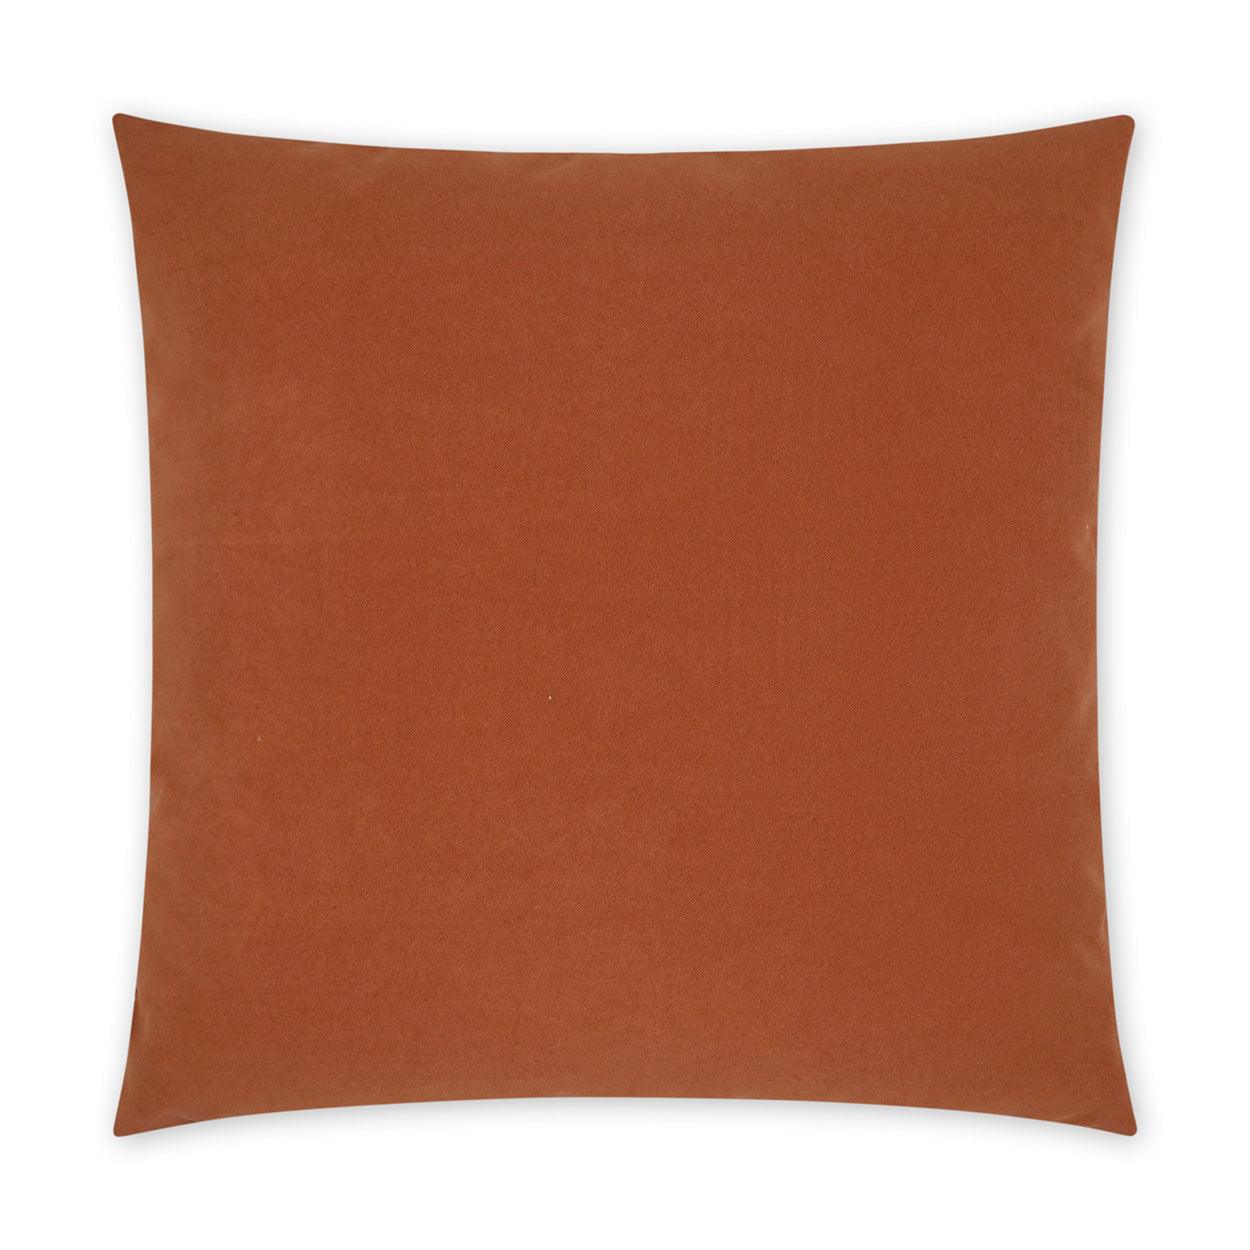 LOOMLAN Outdoor - Outdoor Sundance Duo Pillow - Orange - Outdoor Pillows